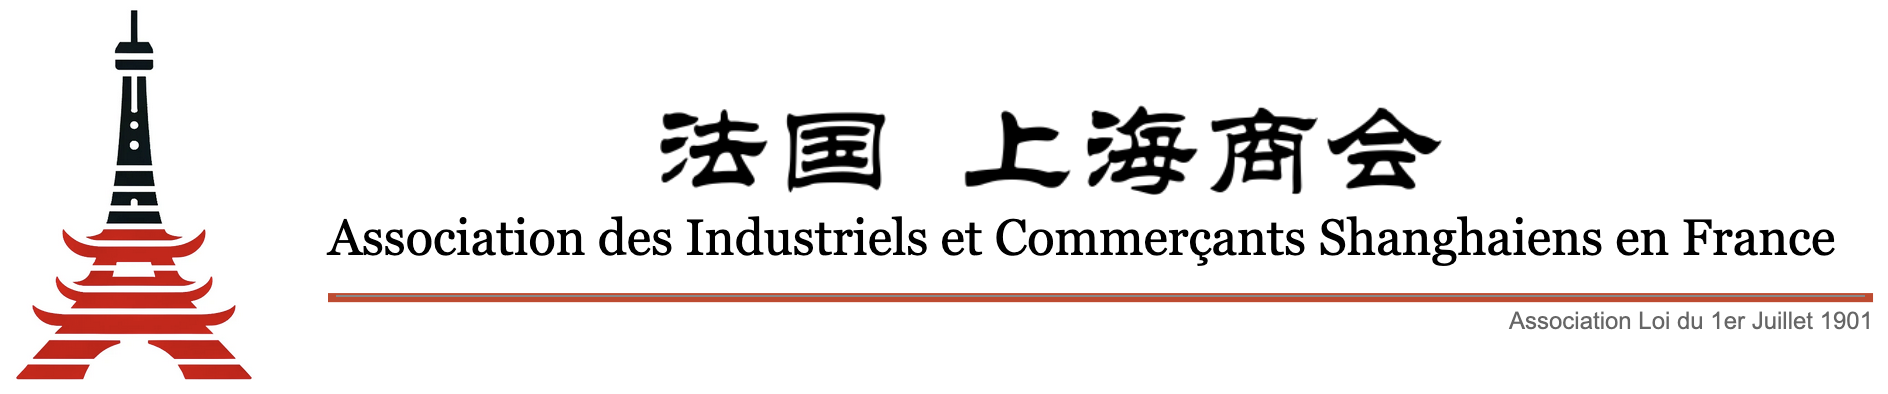 Association des Industriels et Commerçants Shanghaiens en France